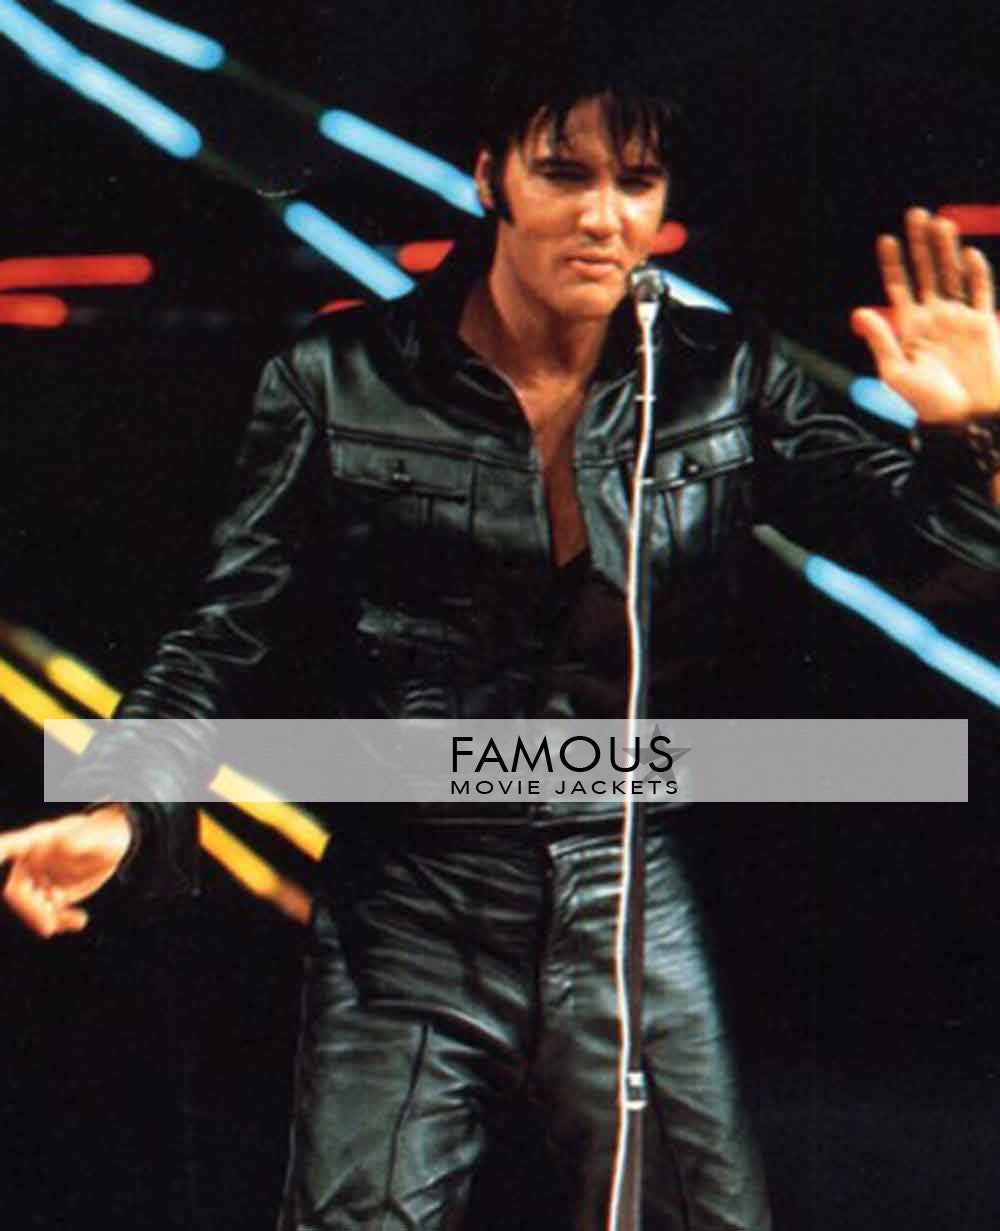 Elvis Presley The King Of Rock Black Leather Jacket